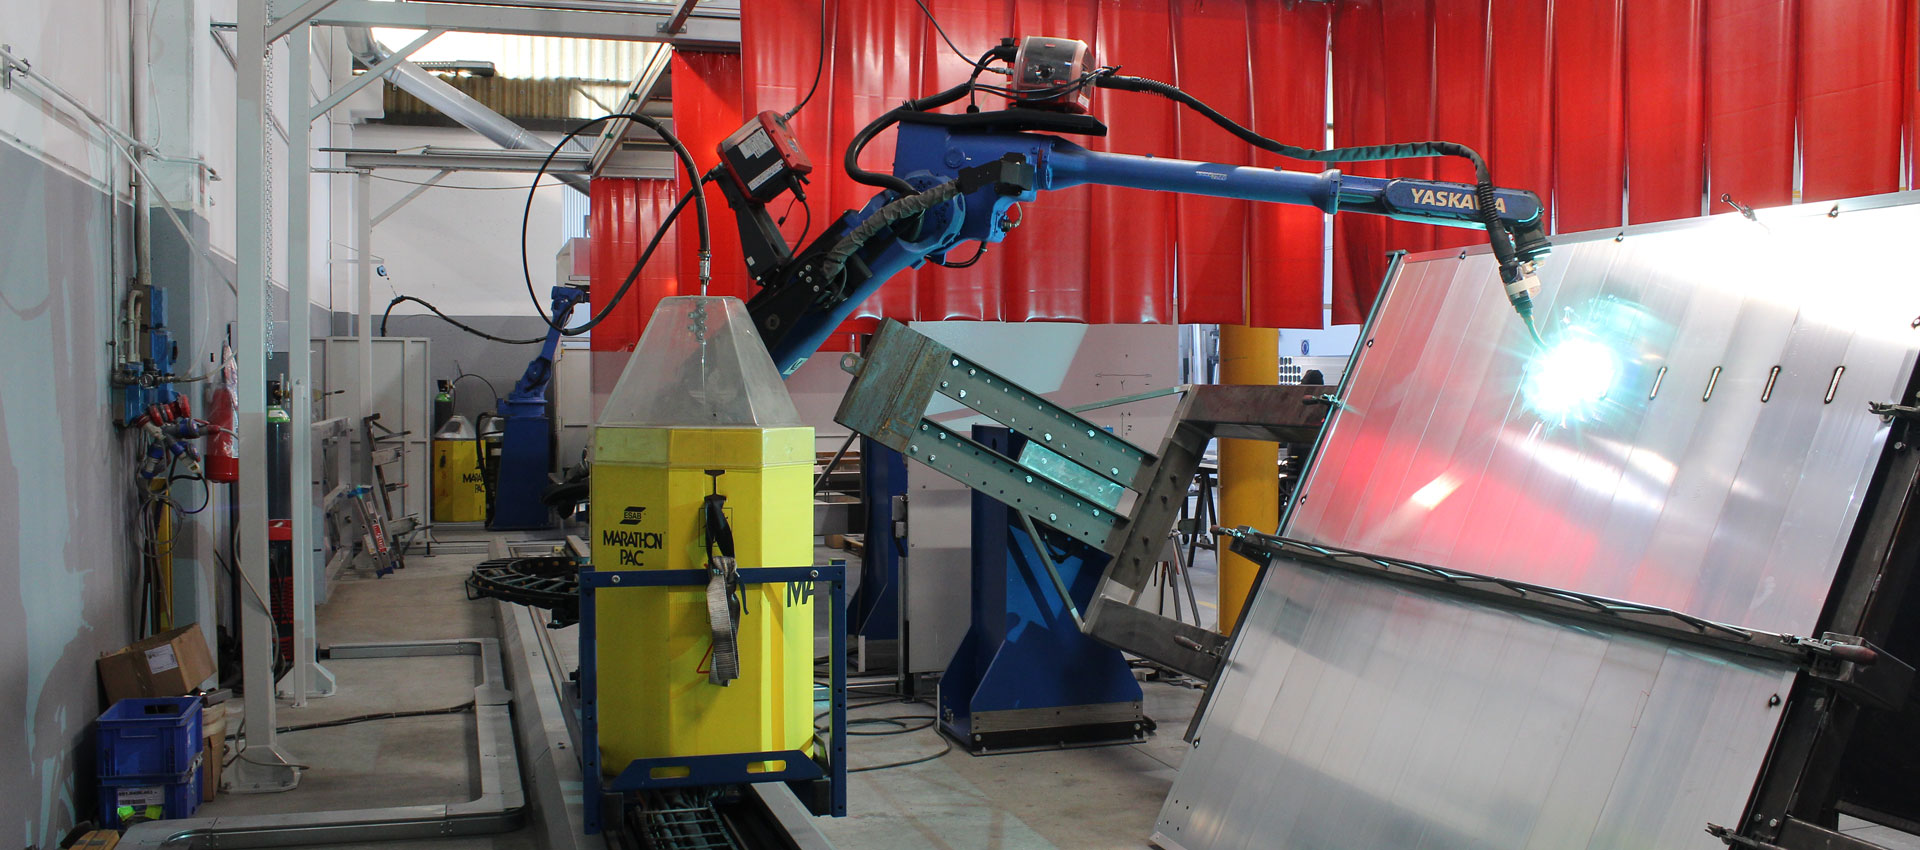 LAFAL supporti per barriques e botti stop - Giro Pallet ed attrezzature per remuage automatico - Verona - Robotic welding services